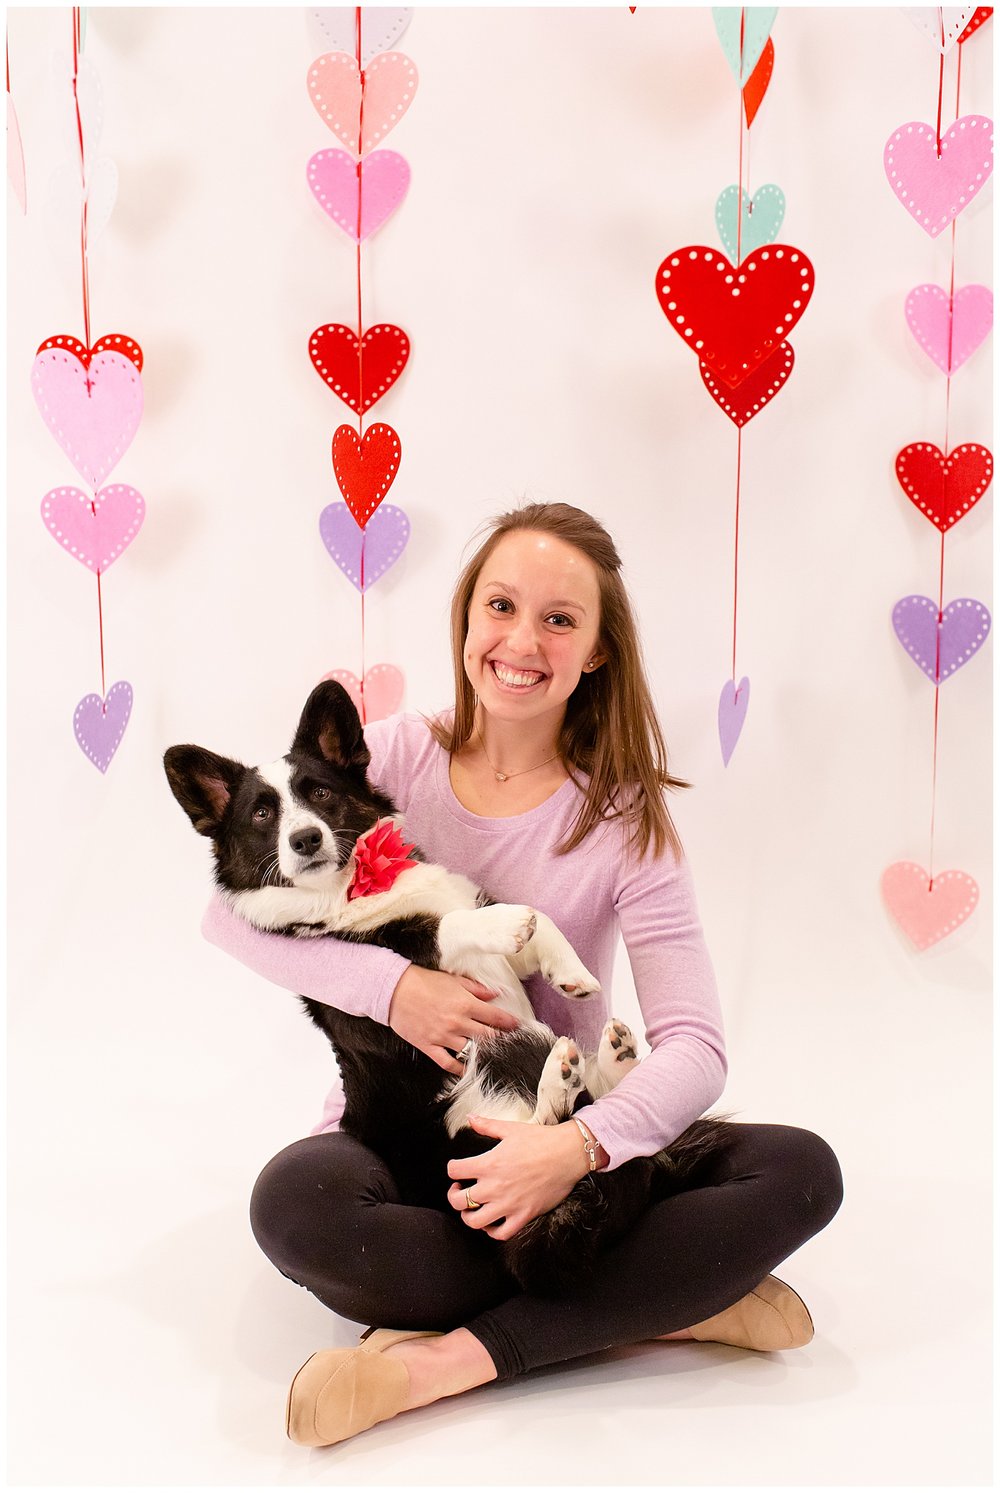 emily-belson-photography-couple-dog-valentine-photoshoot-06.jpg